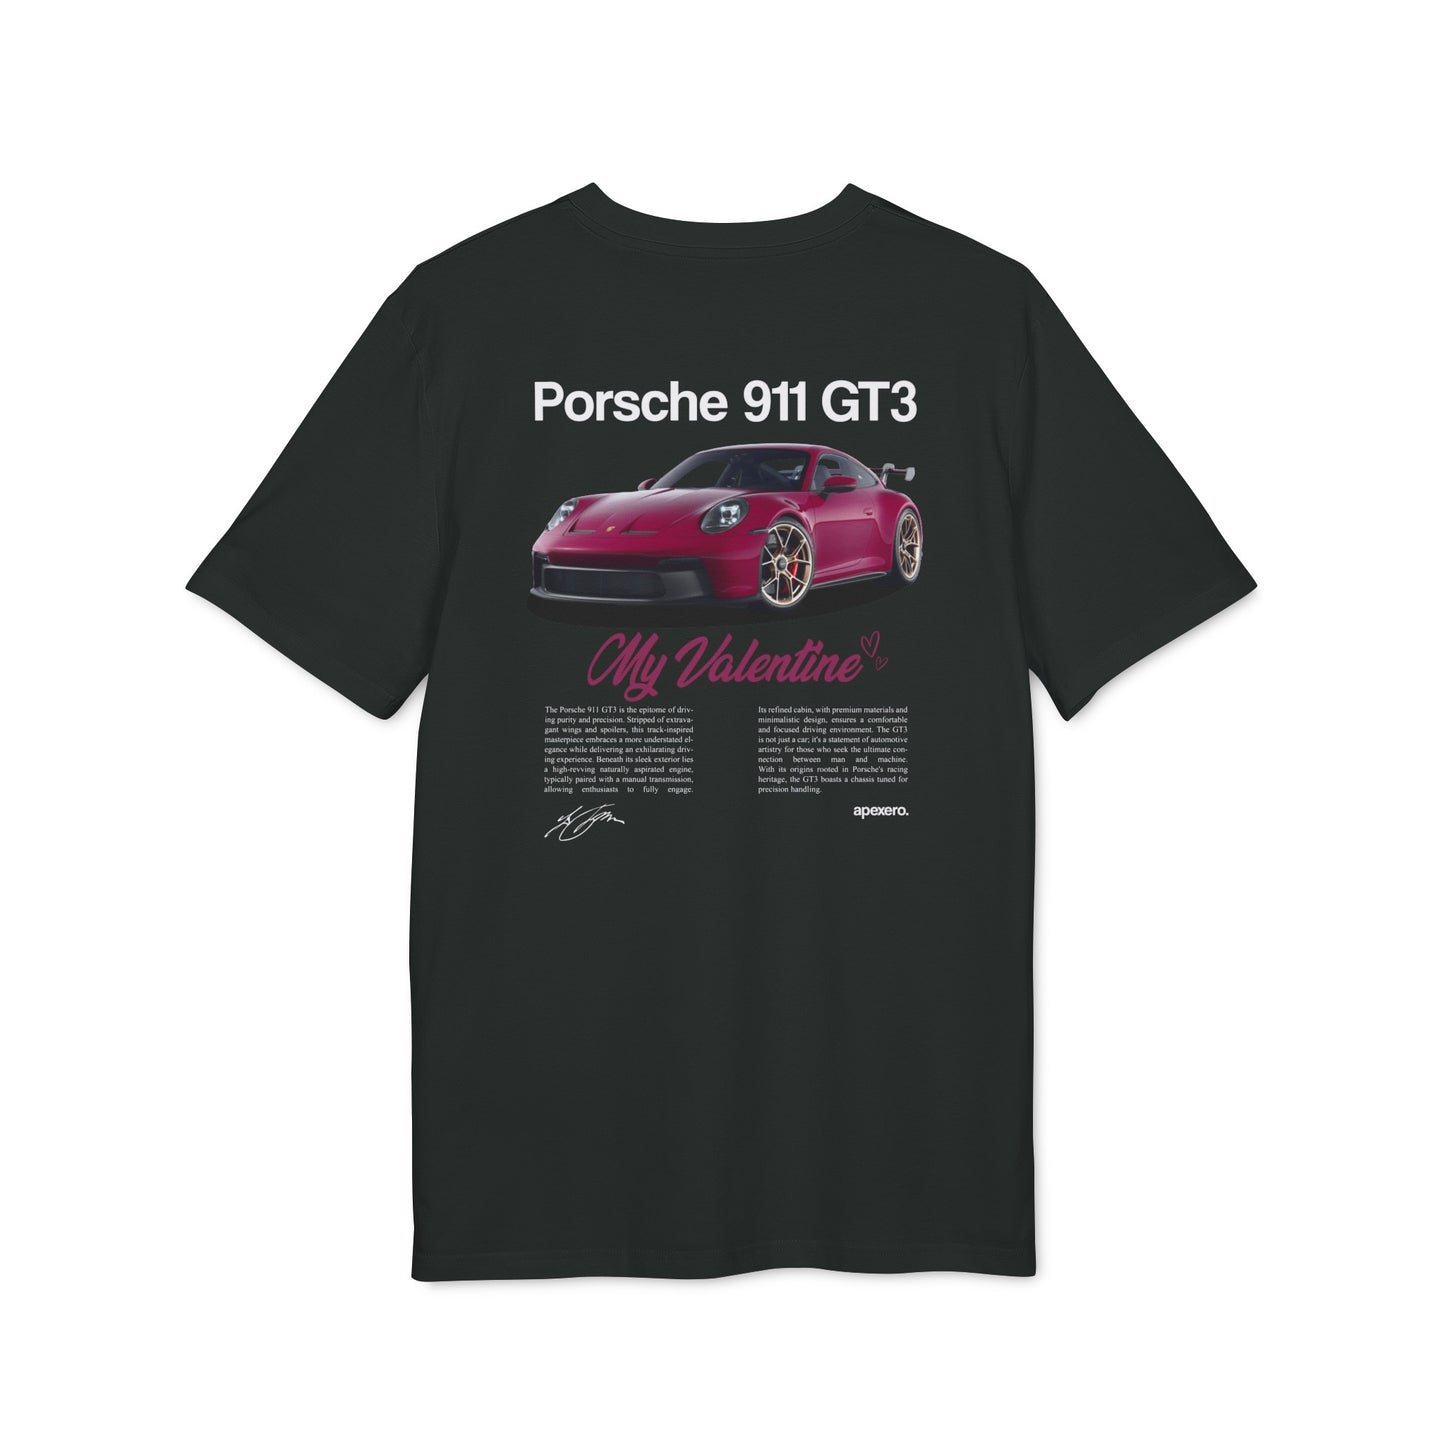 Porsche 911 GT3 "My Valentine" T-shirt